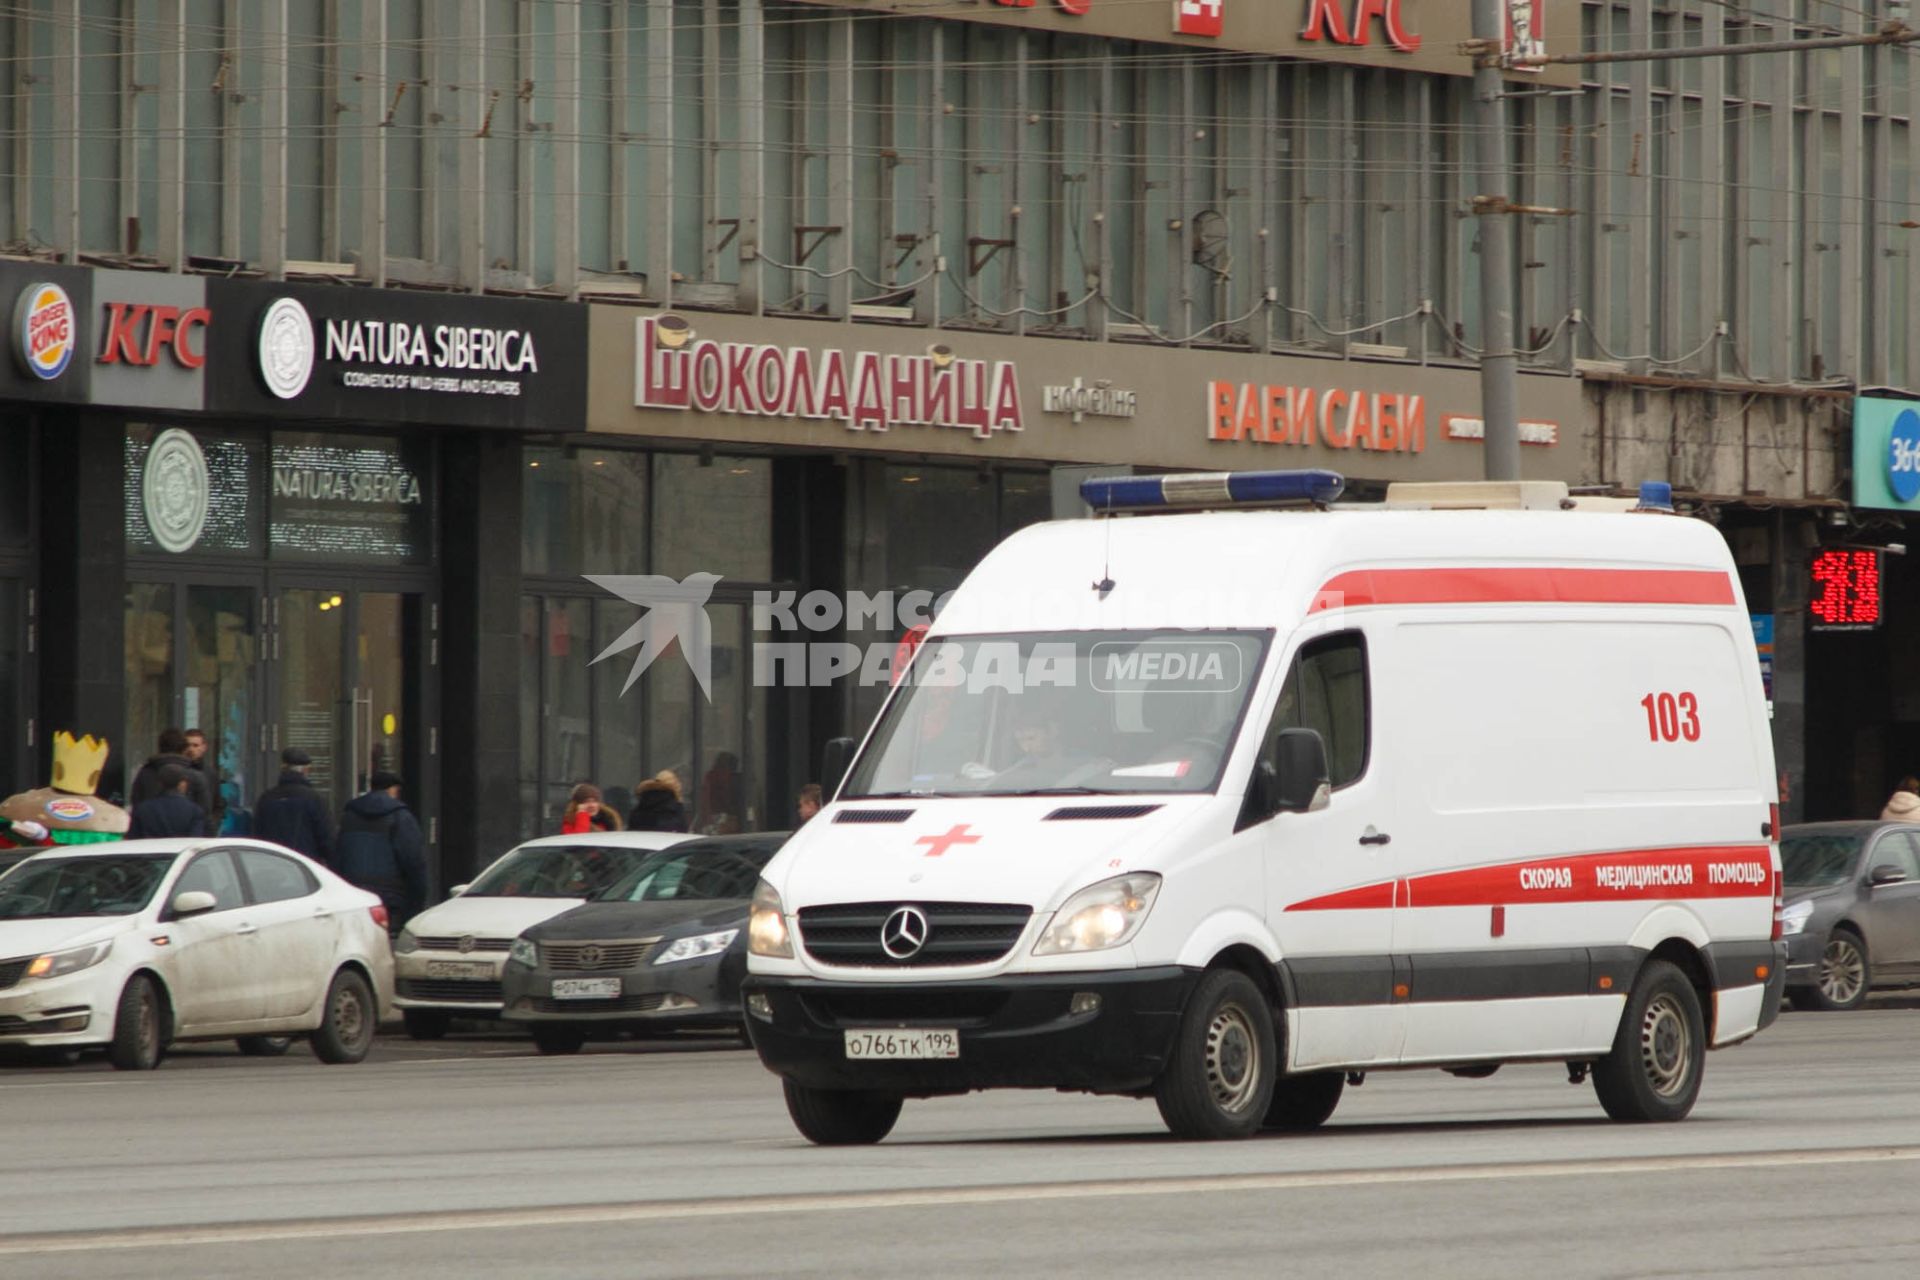 Москва.  Автомобиль скорой медицинской помощи на одной из улиц города.